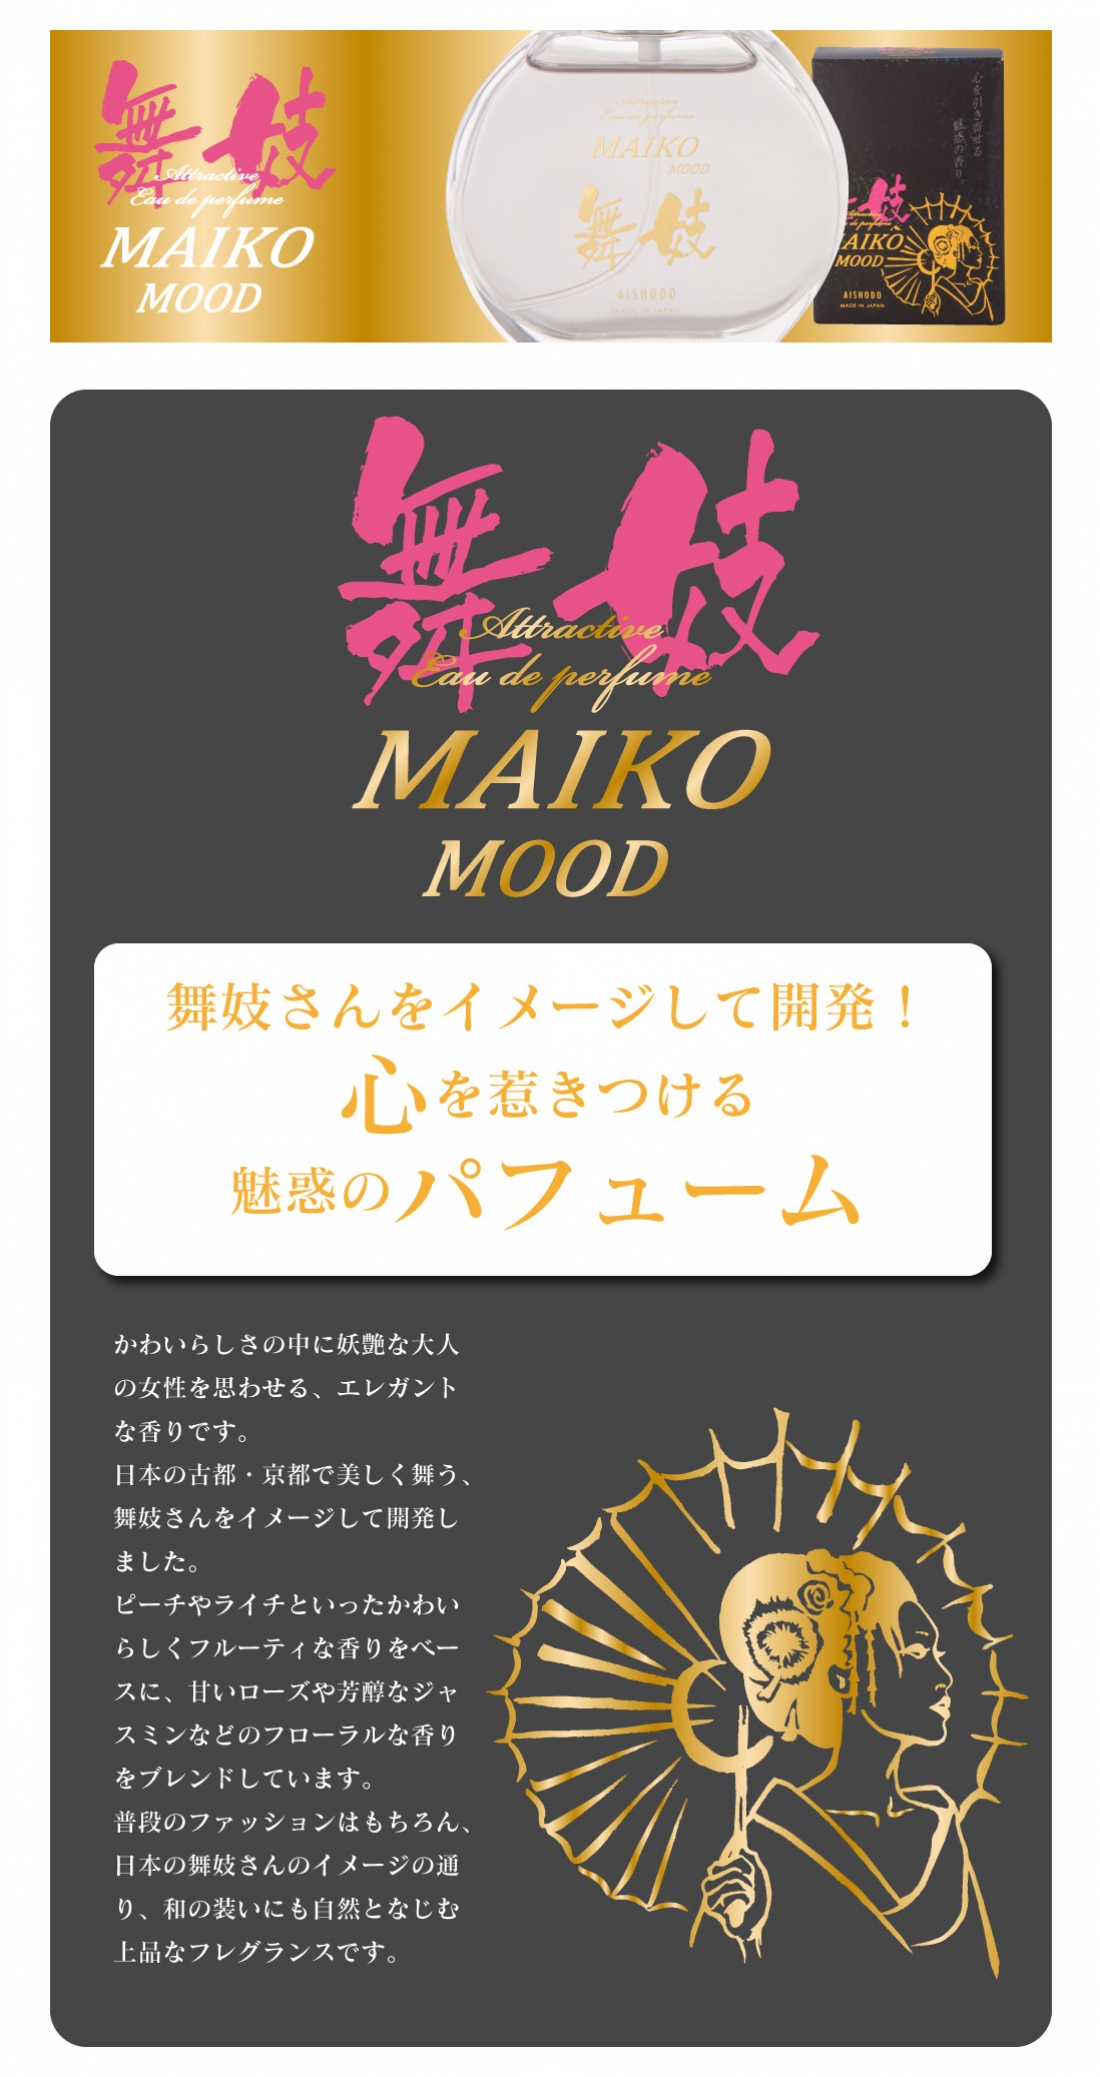 舞妓ムードパフューム
Maiko Mood Perfume